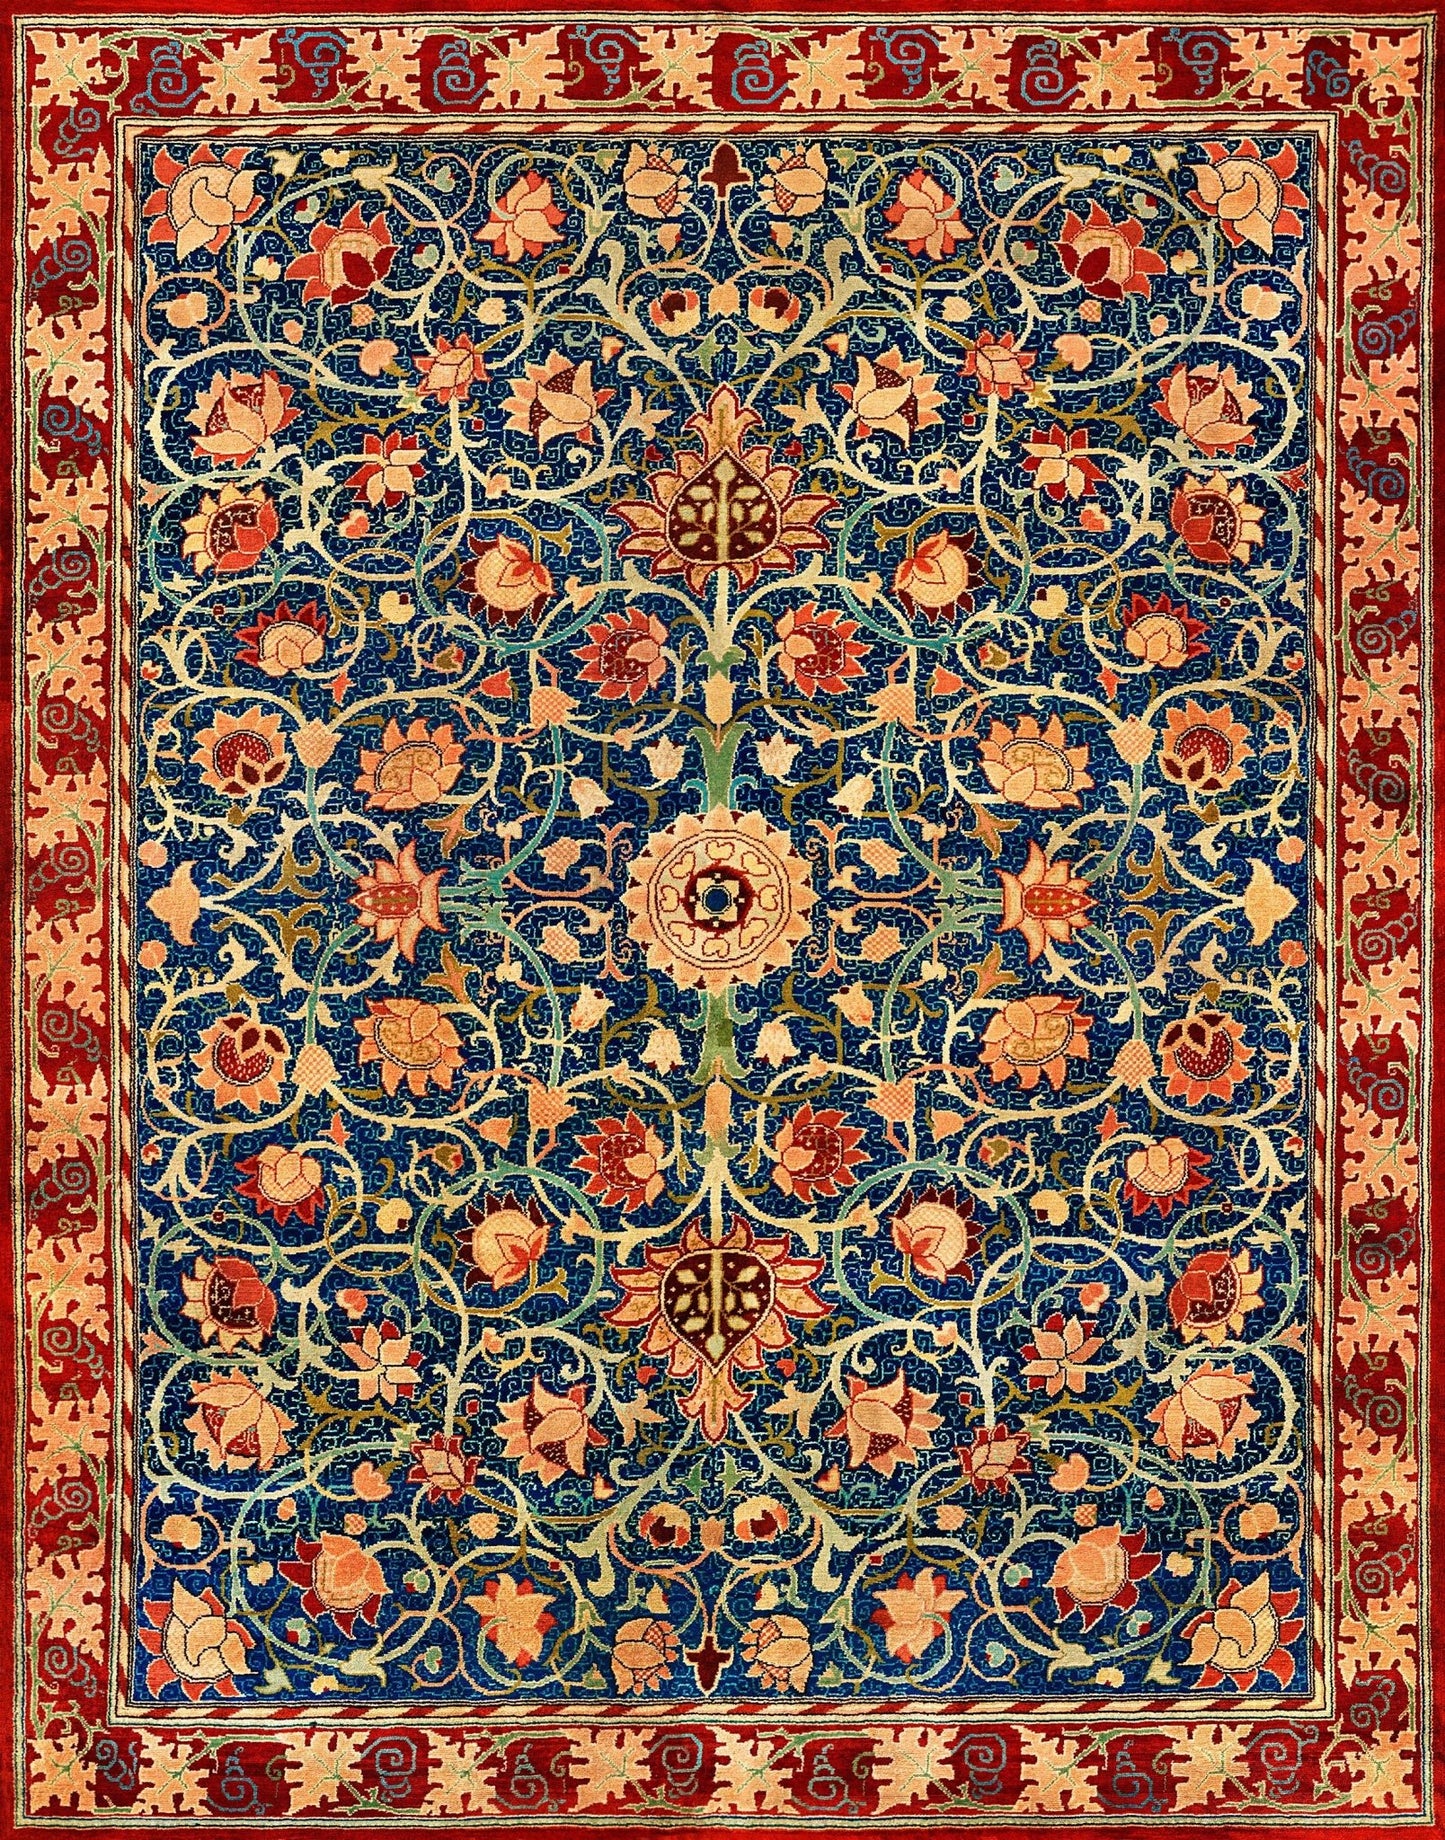 WILLIAM MORRIS - Holland Park Carpet